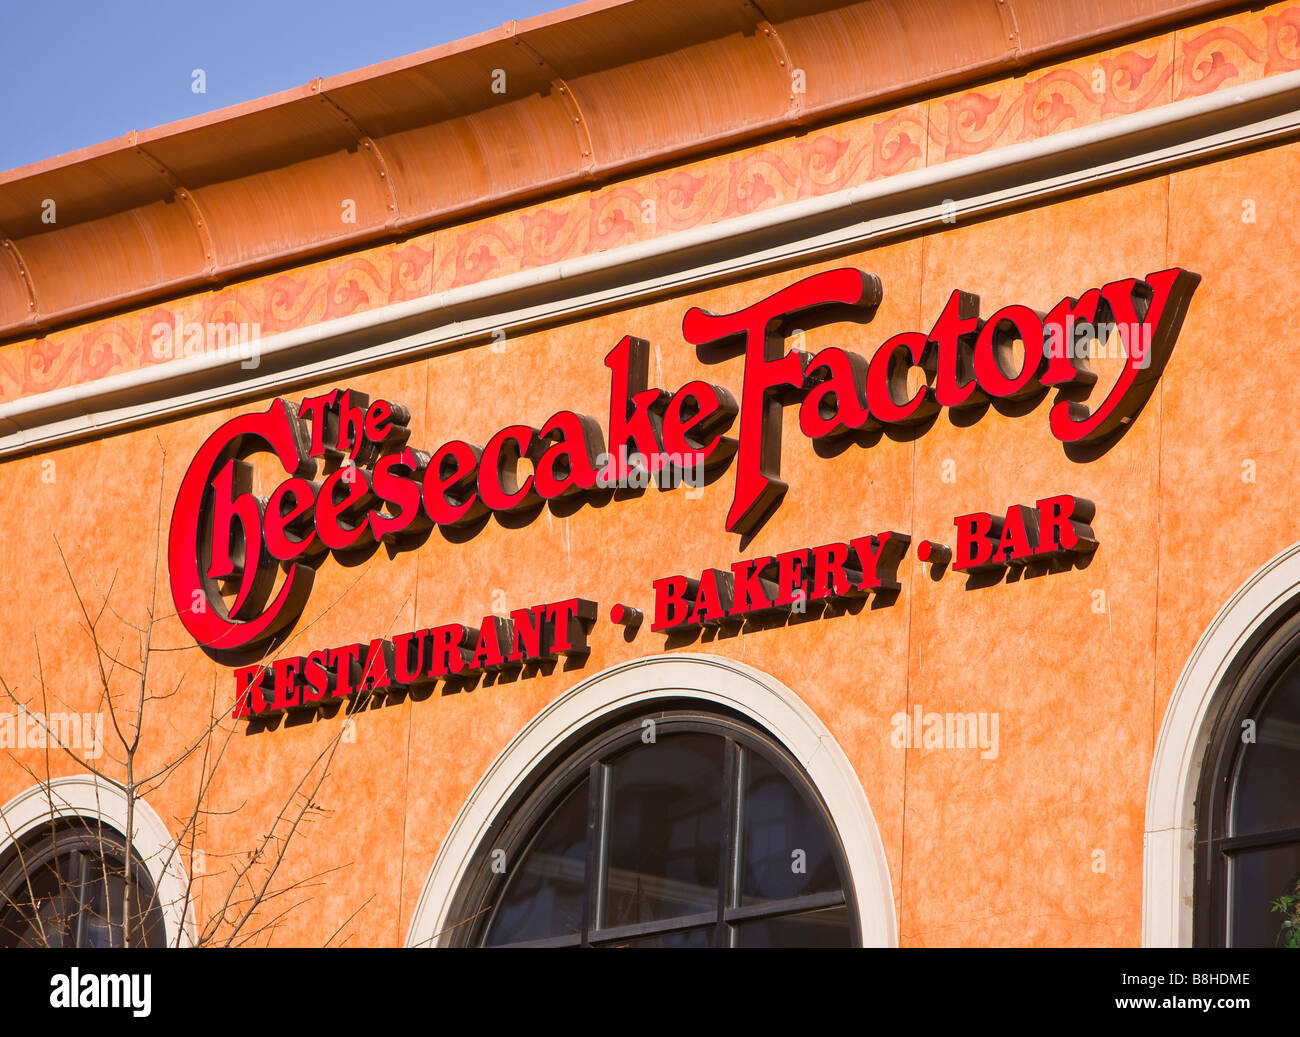 ARLINGTON, VIRGINIA USA - Cheesecake Factory restaurant sign, on exterior. Stock Photo